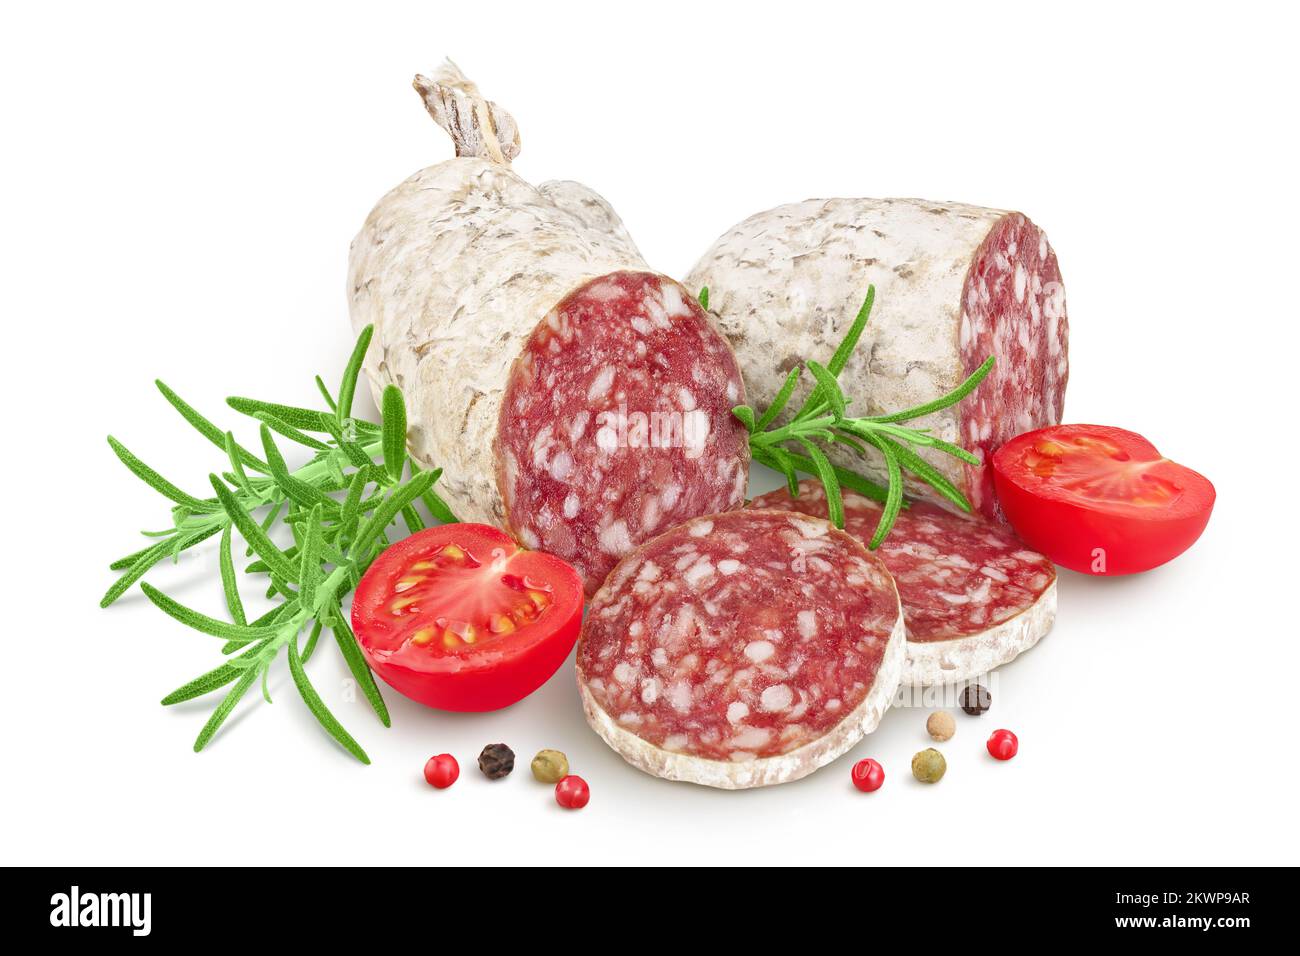 Tranches de saucisse salami séchées isolées sur fond blanc. Cuisine italienne avec une grande profondeur de champ Banque D'Images